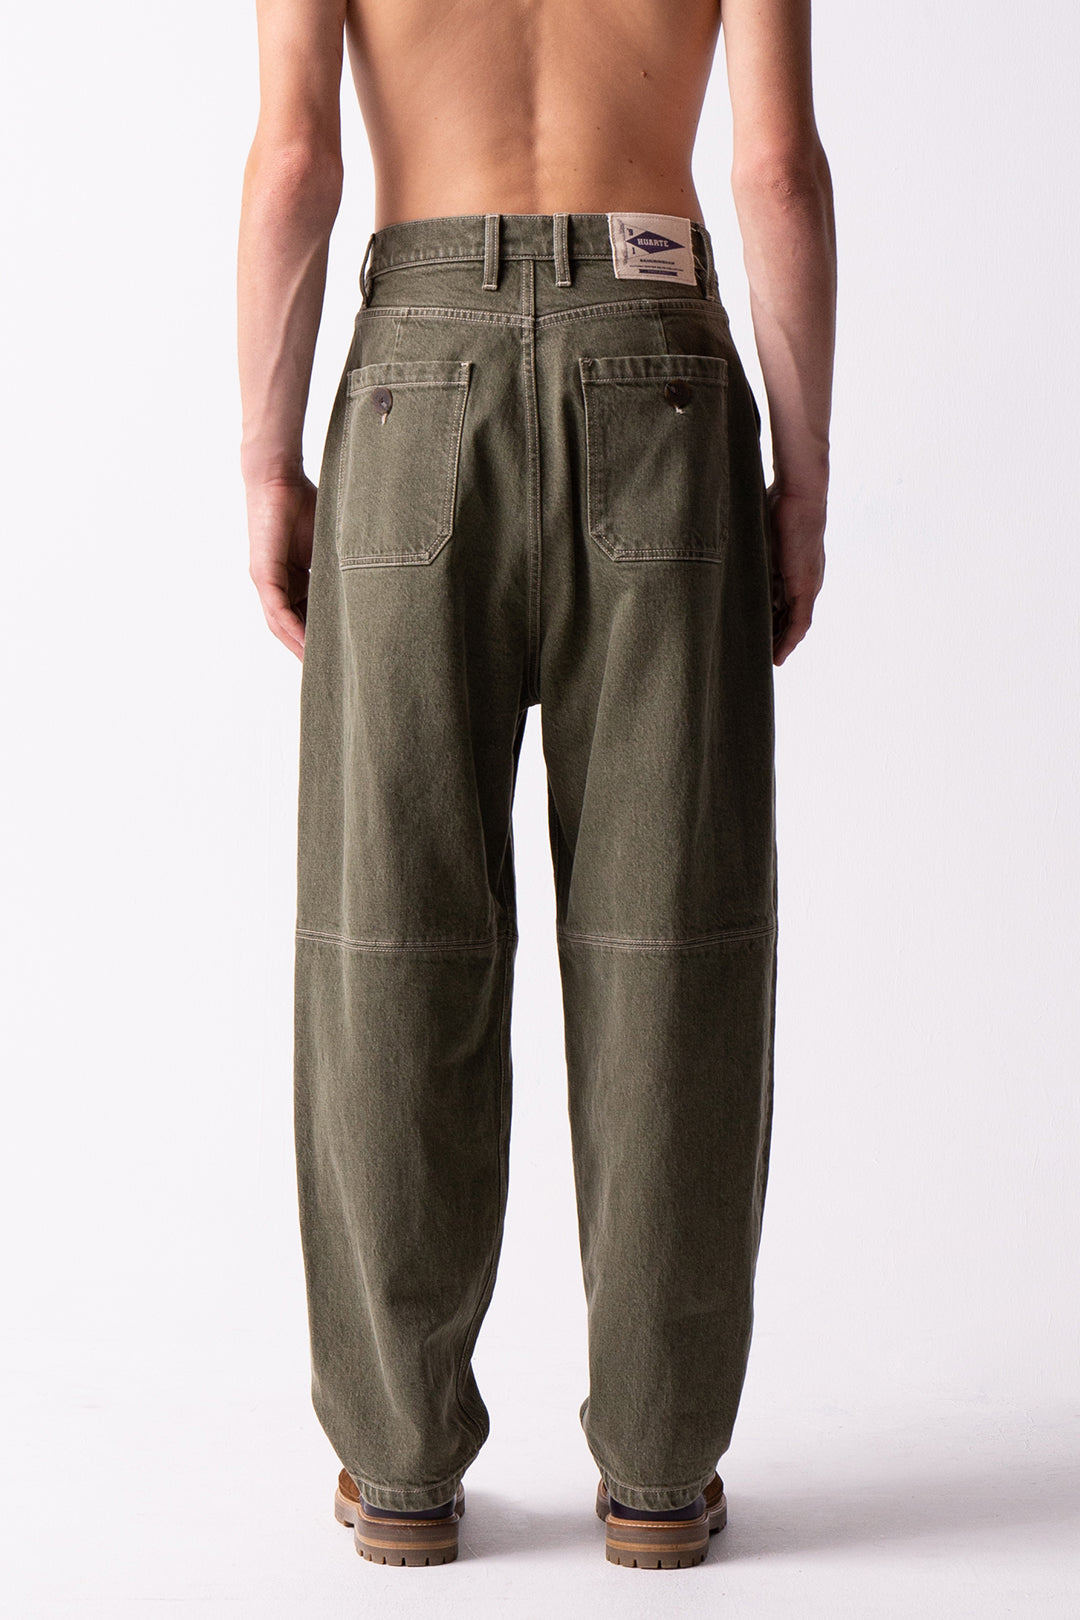 Summerfield green denim trousers